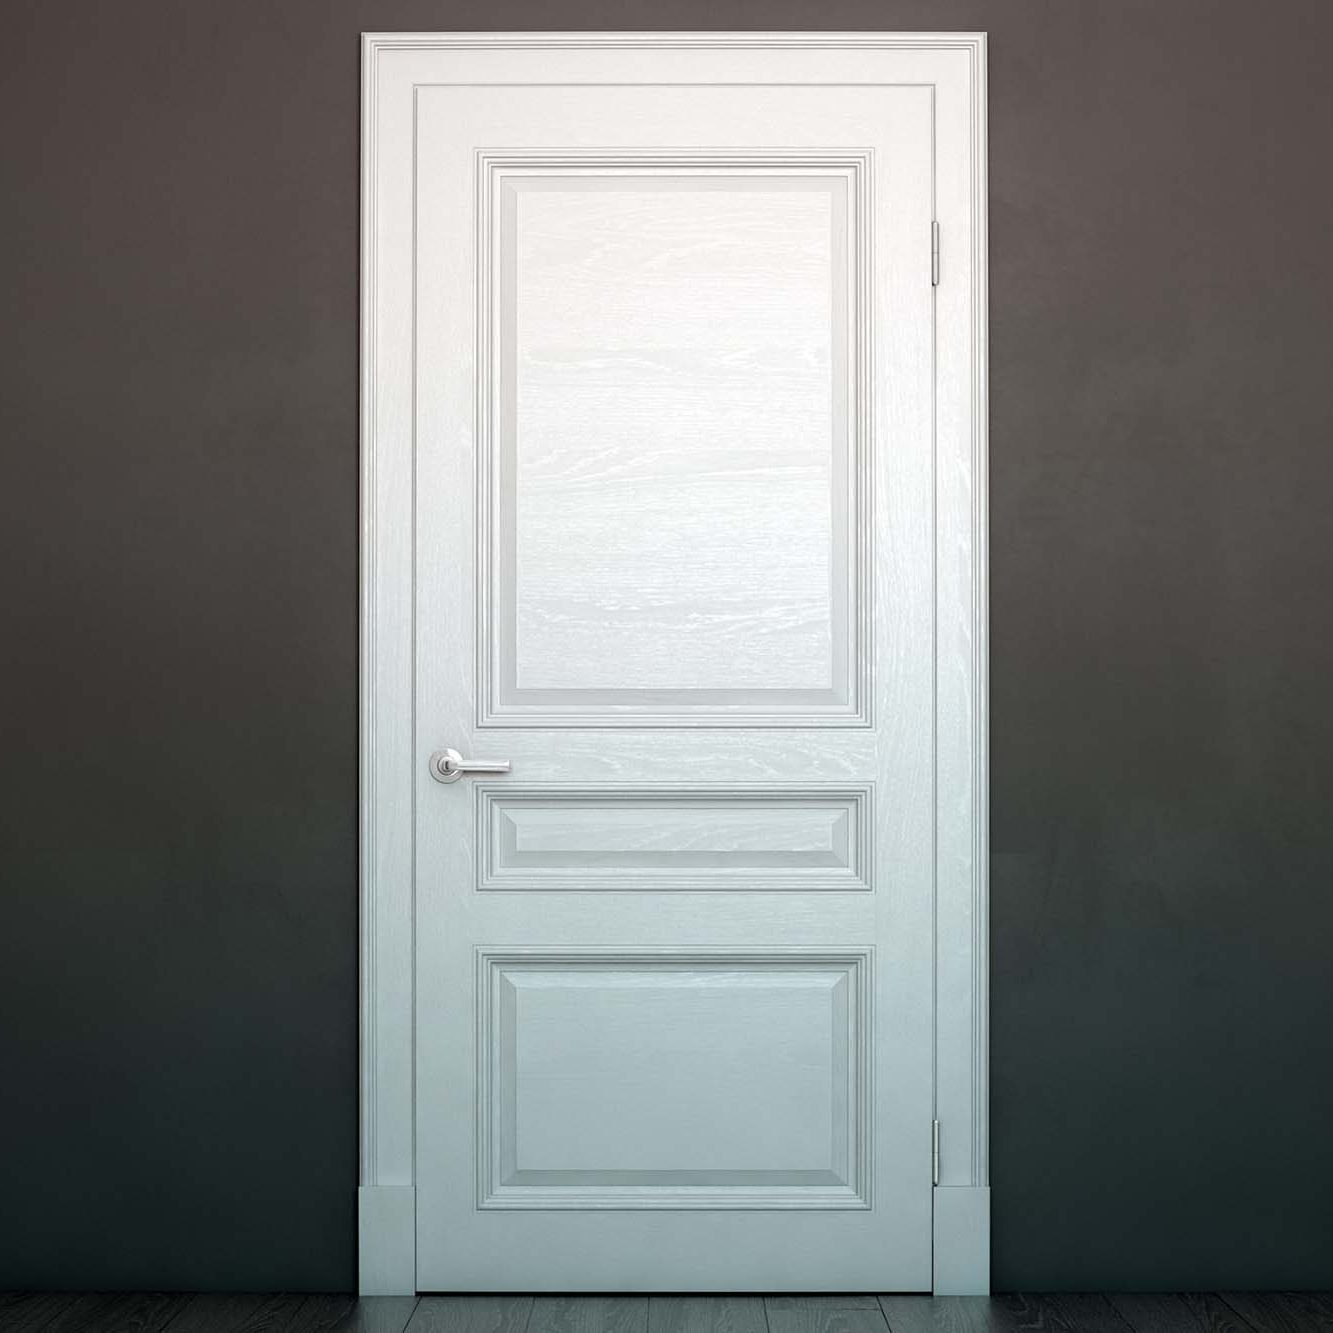 Single panel door